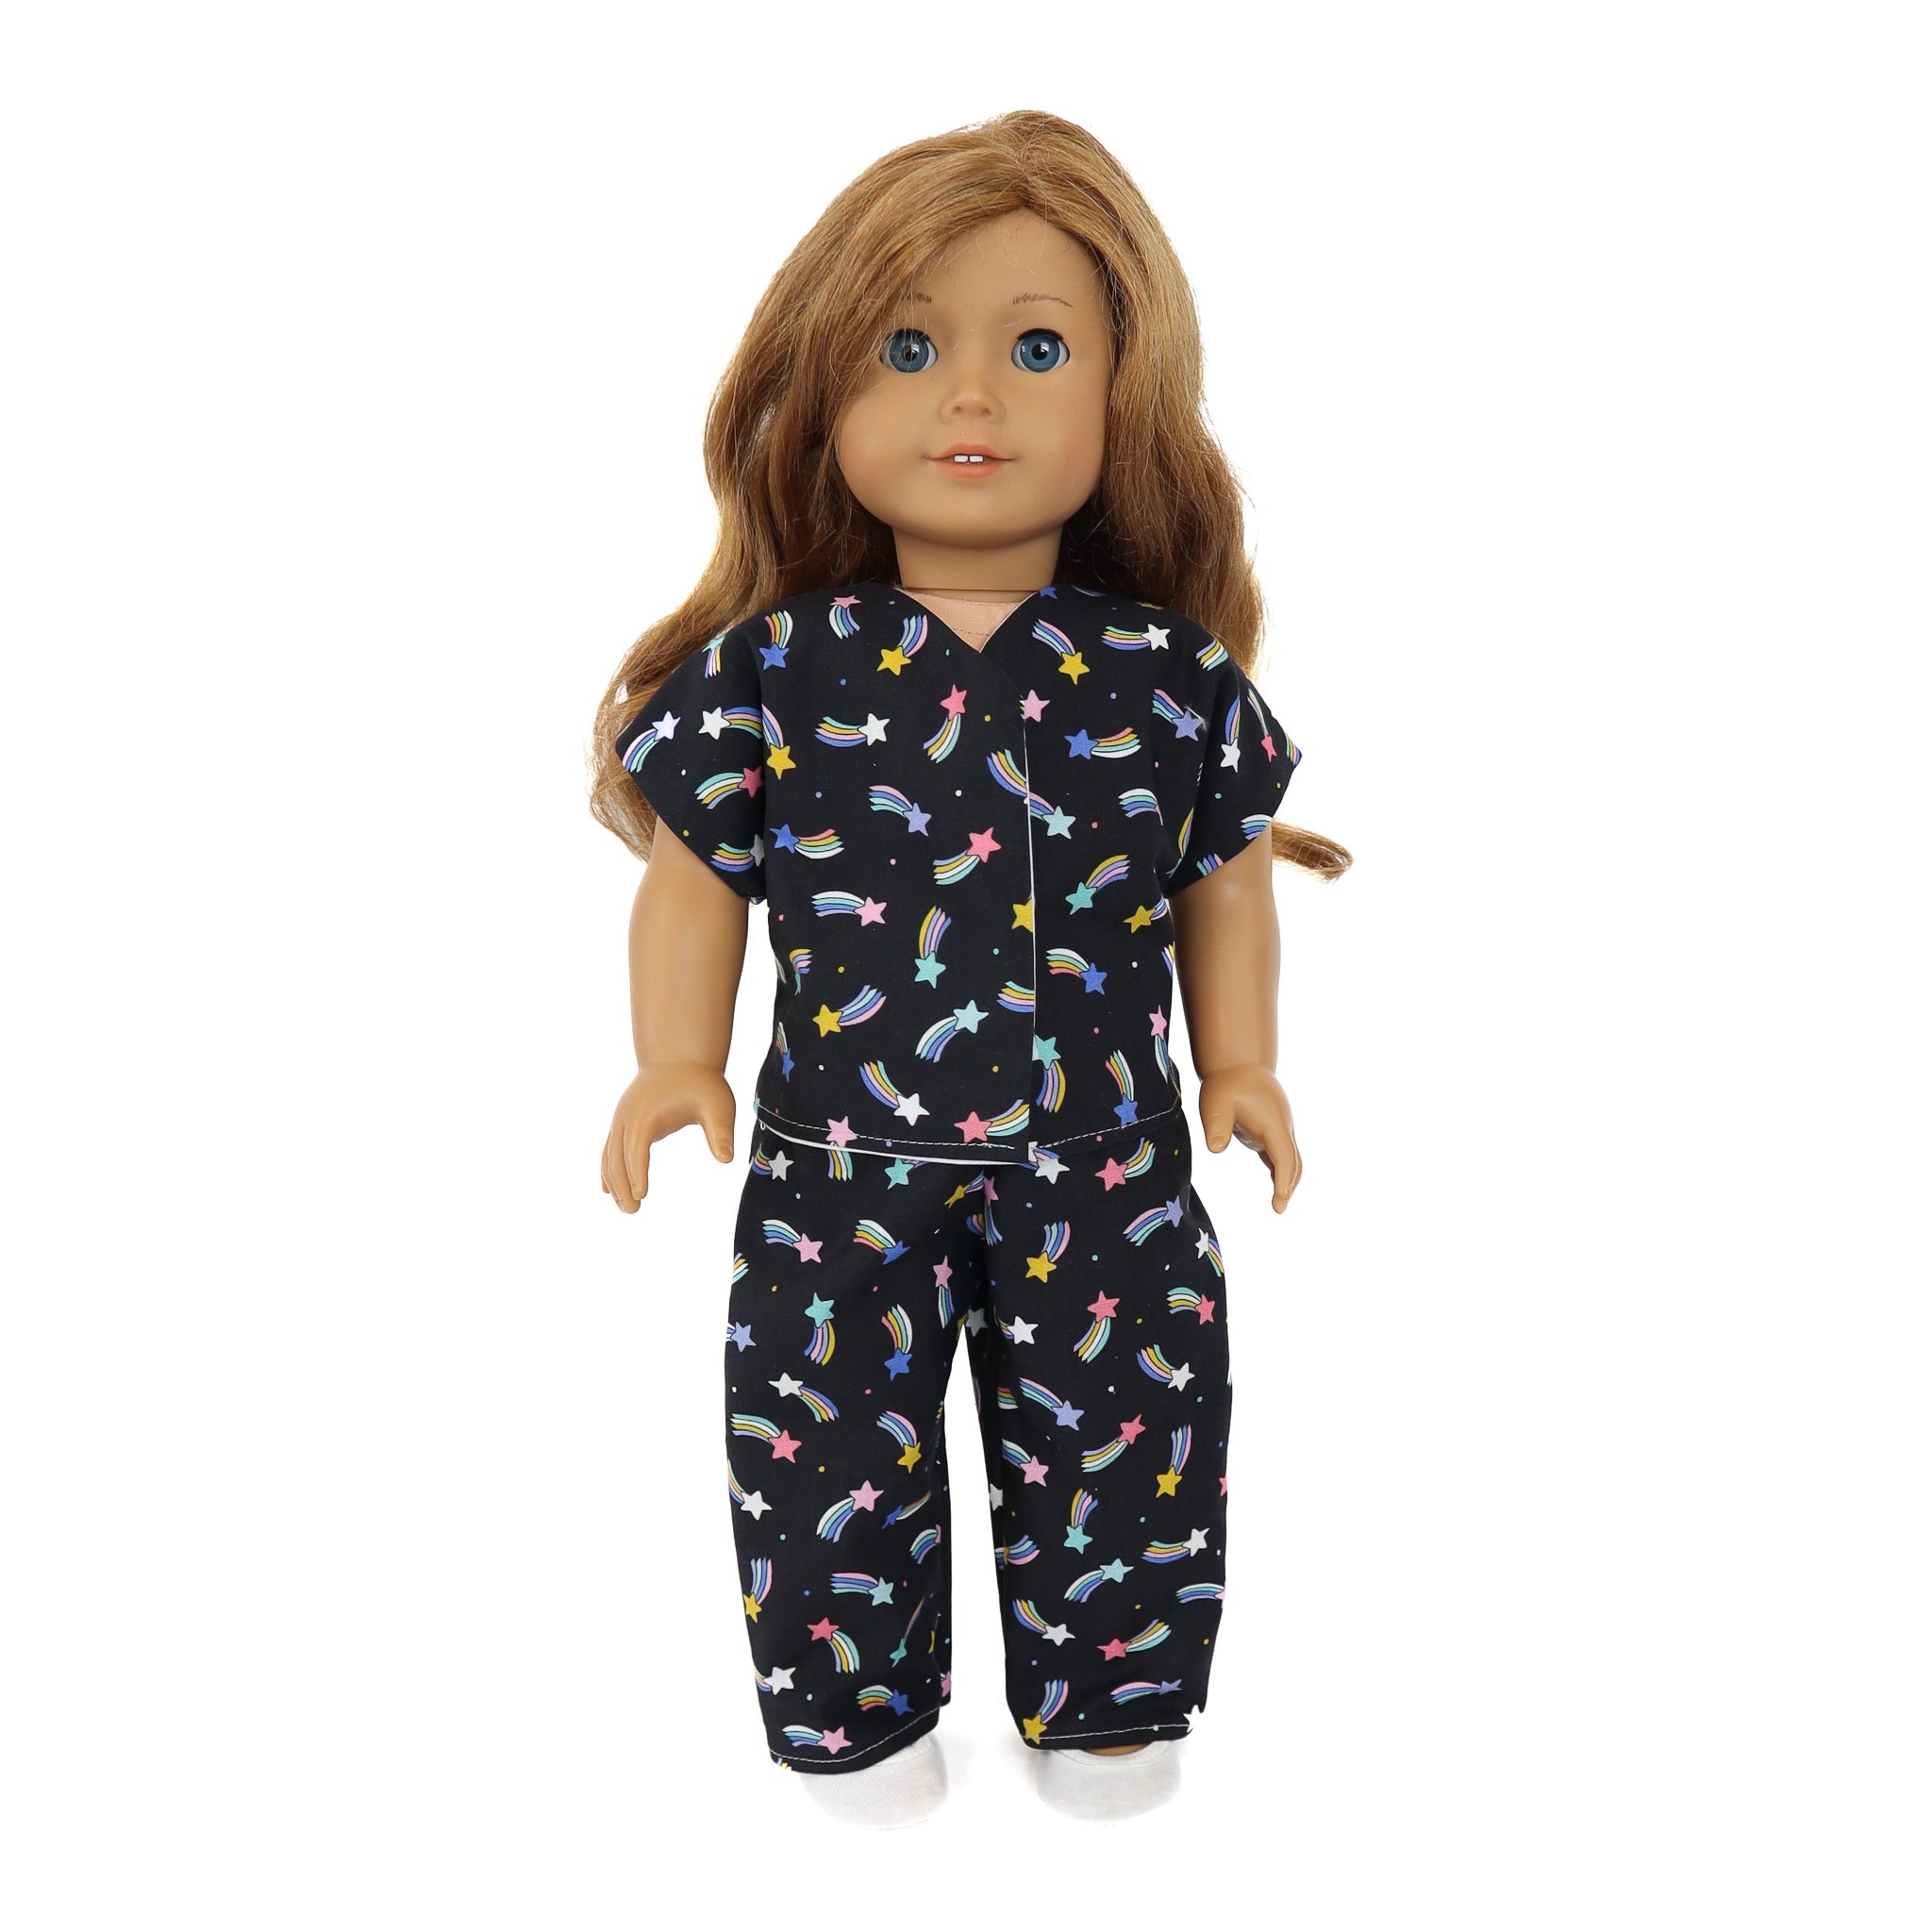 18 Doll Pajamas - Beginner Sewing Pattern & Video Tutorial